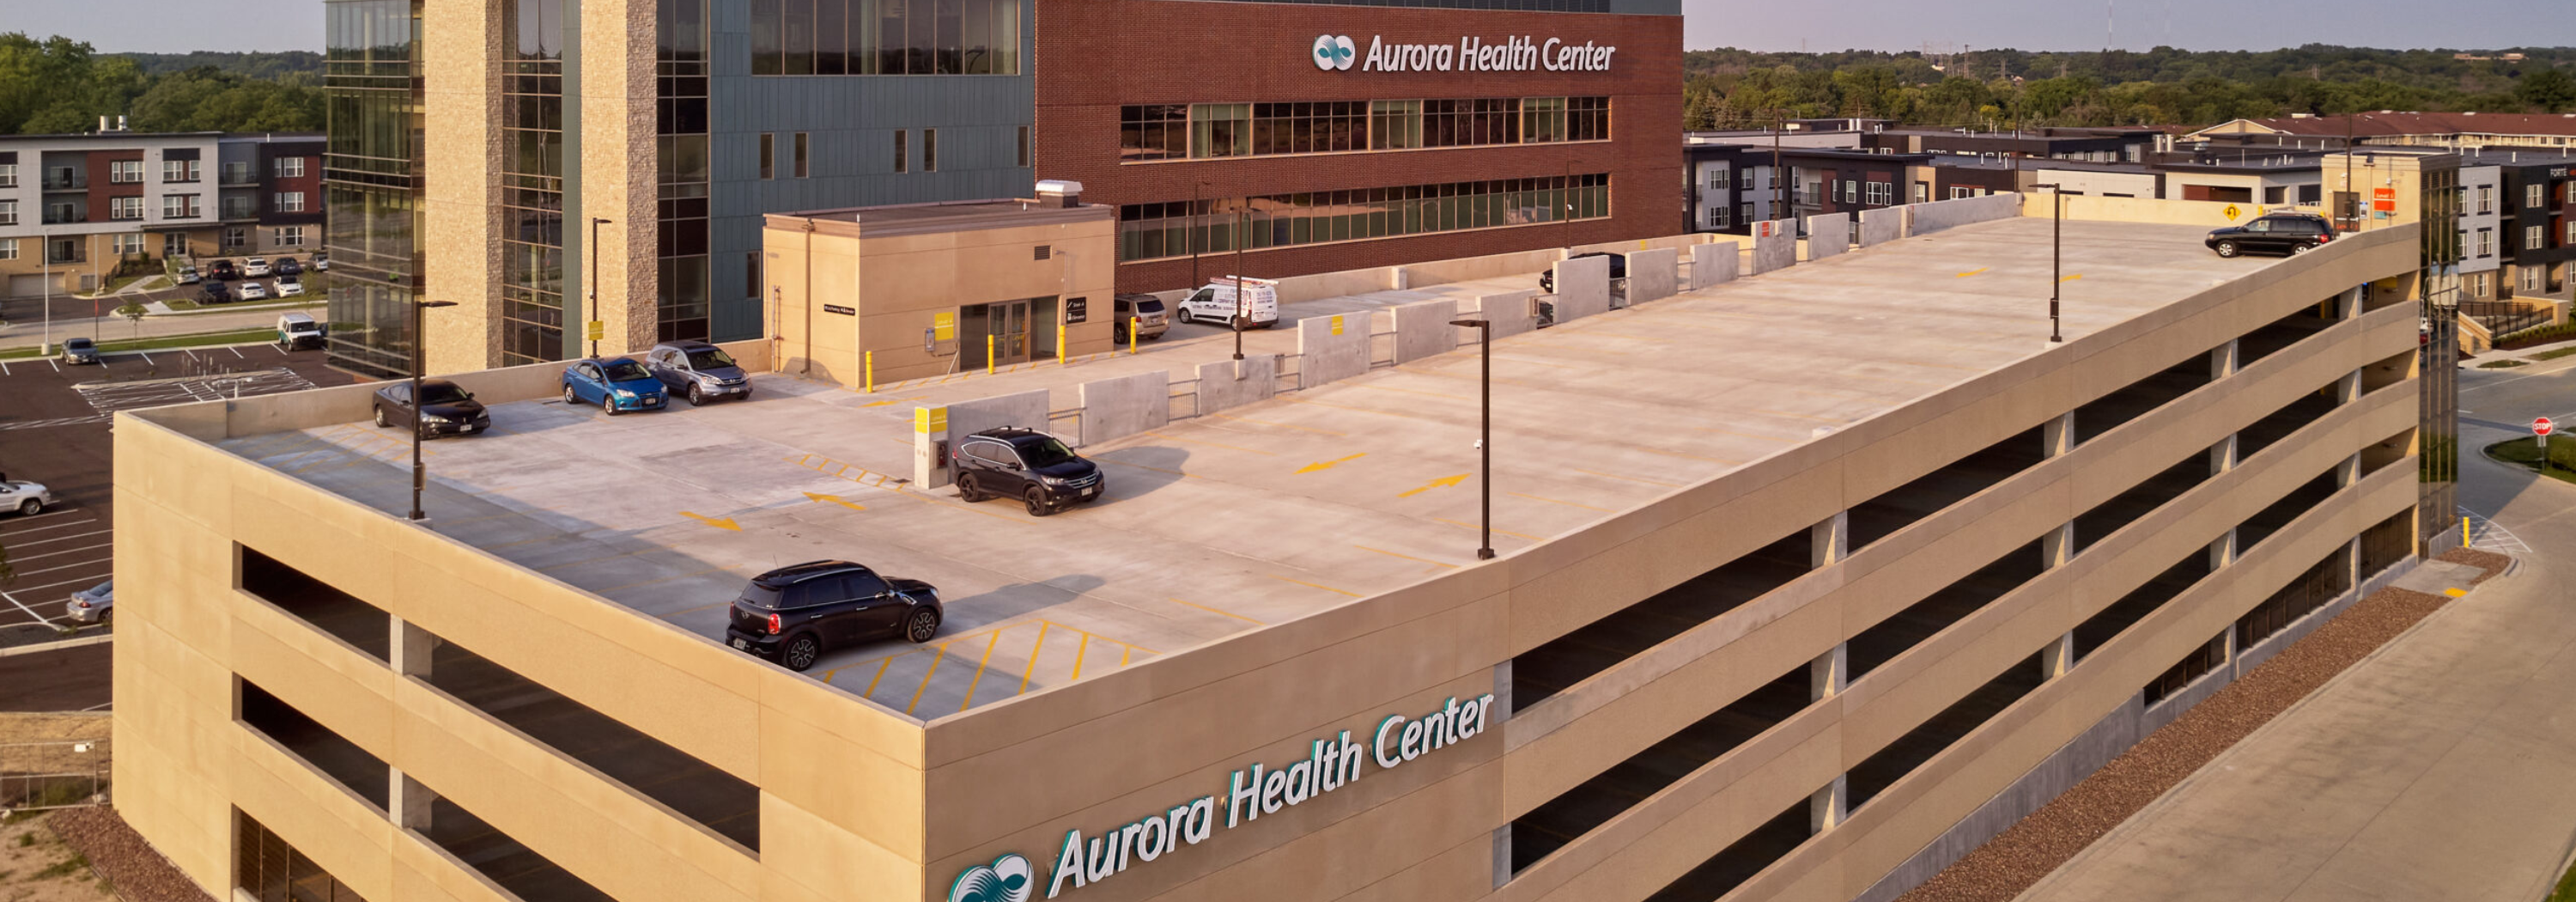 Aurora Health Center - 84 South Parking Structure